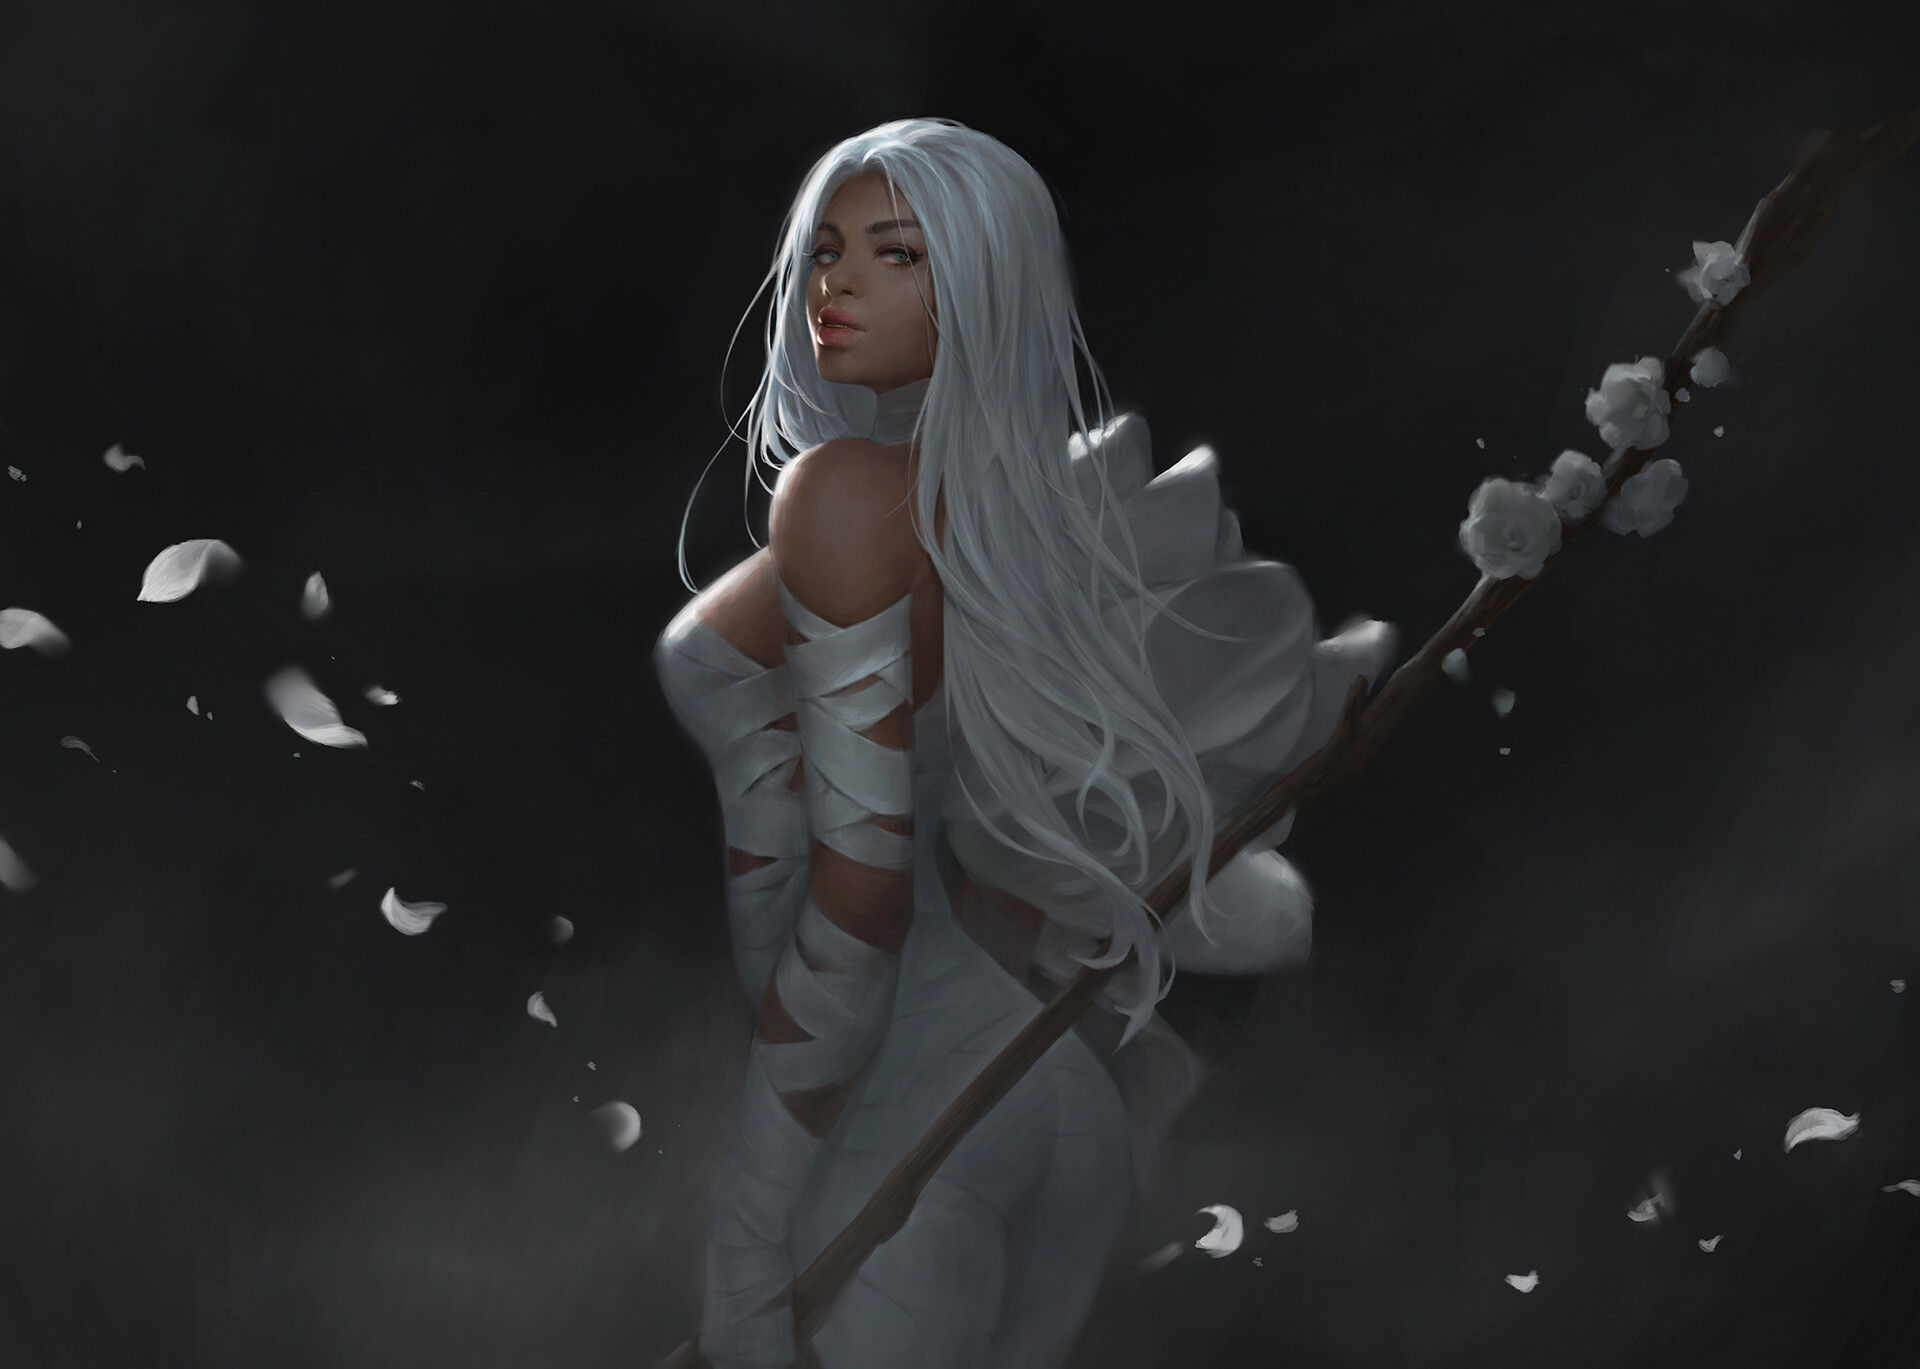 white hair woman art